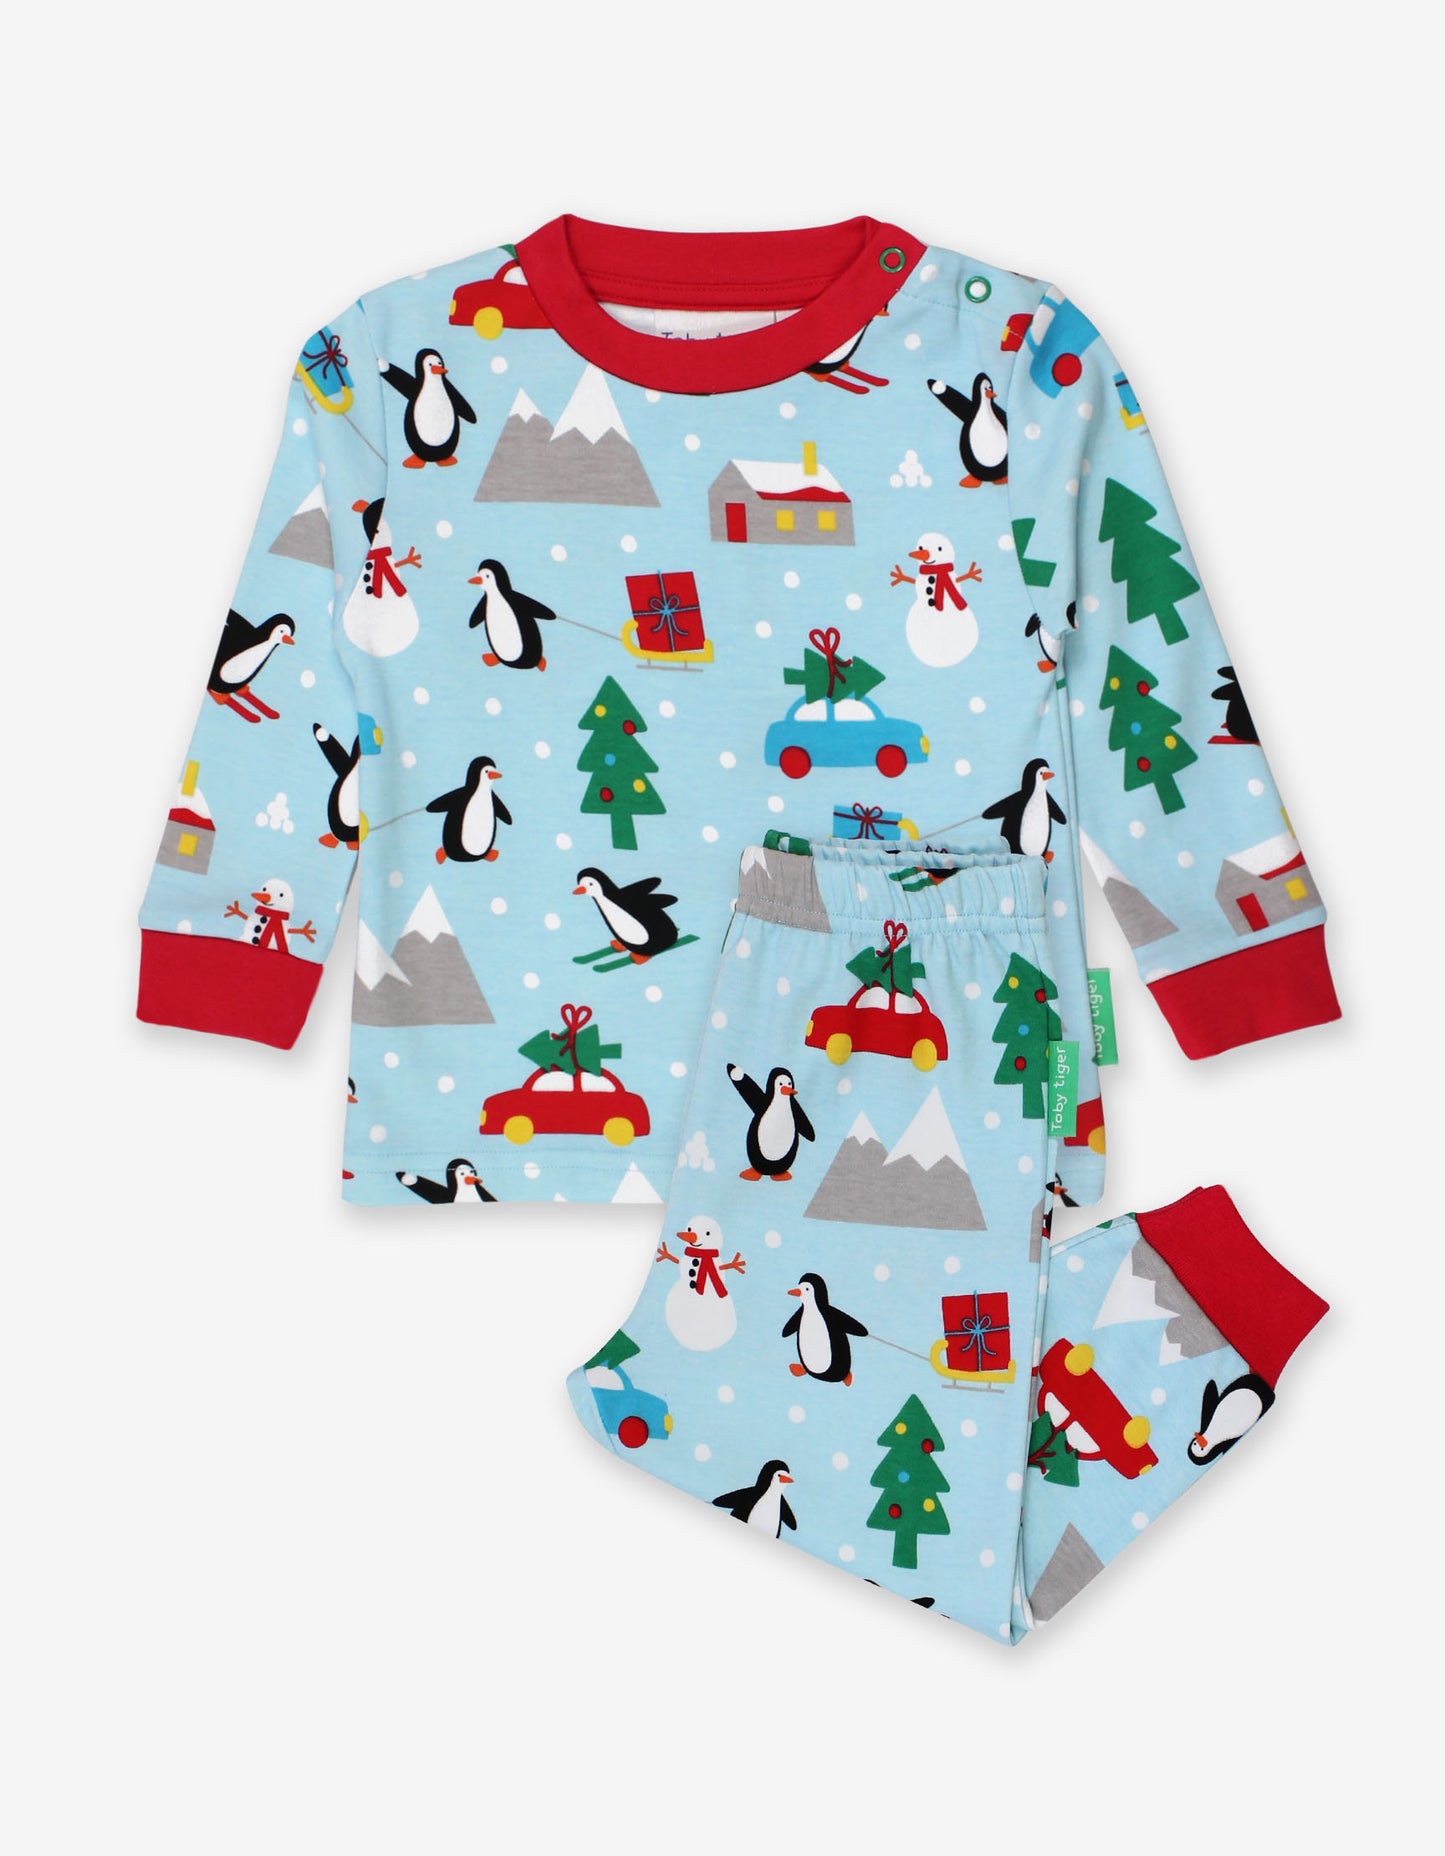 Penguins' Christmas Pyjamas